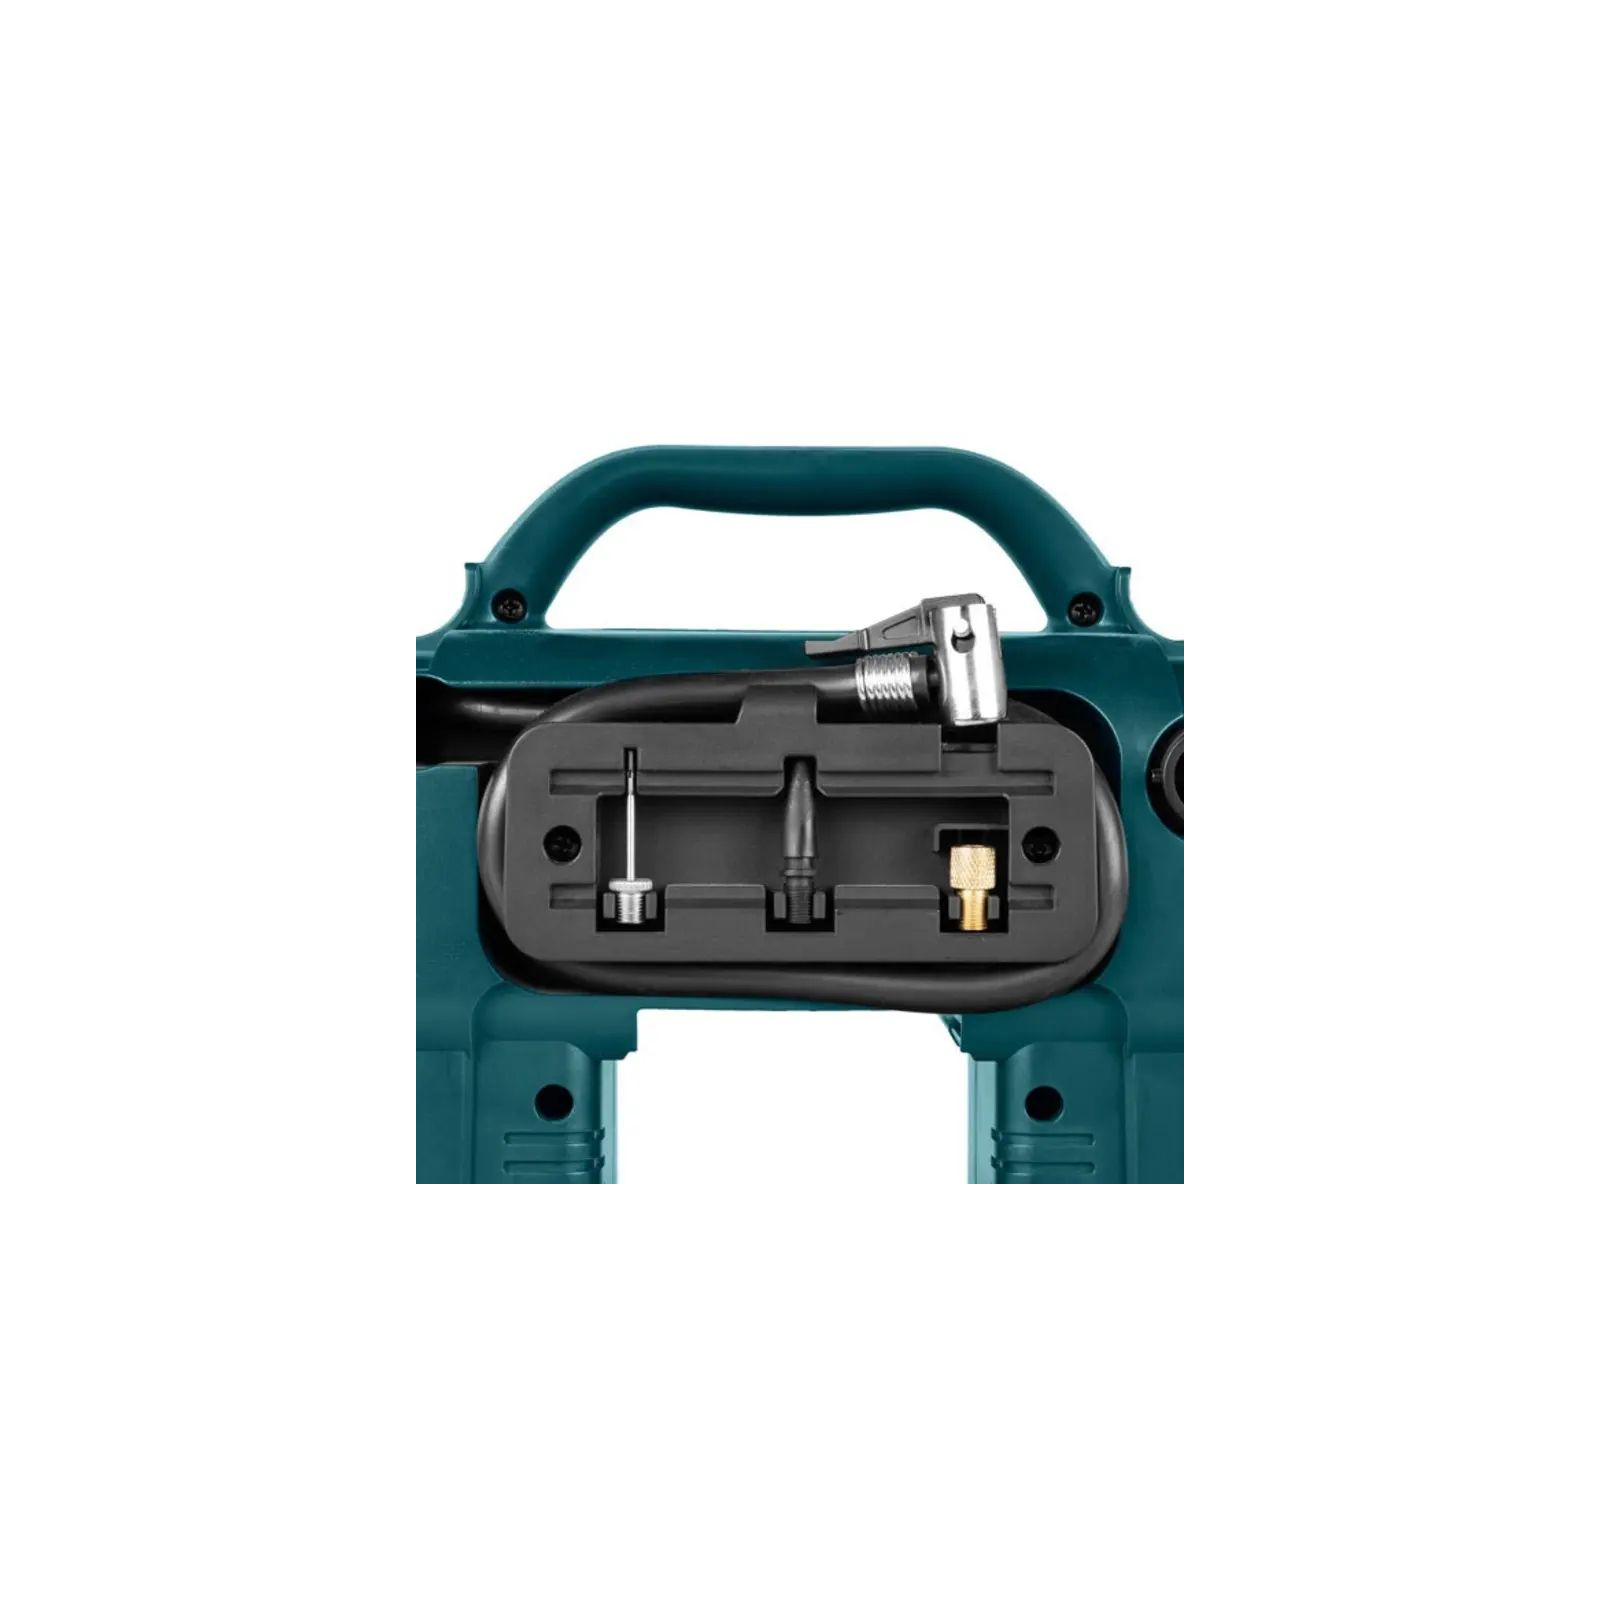 Автомобильный компрессор Ronix цифровой 12В, 160 PSI (RH-4260) изображение 3